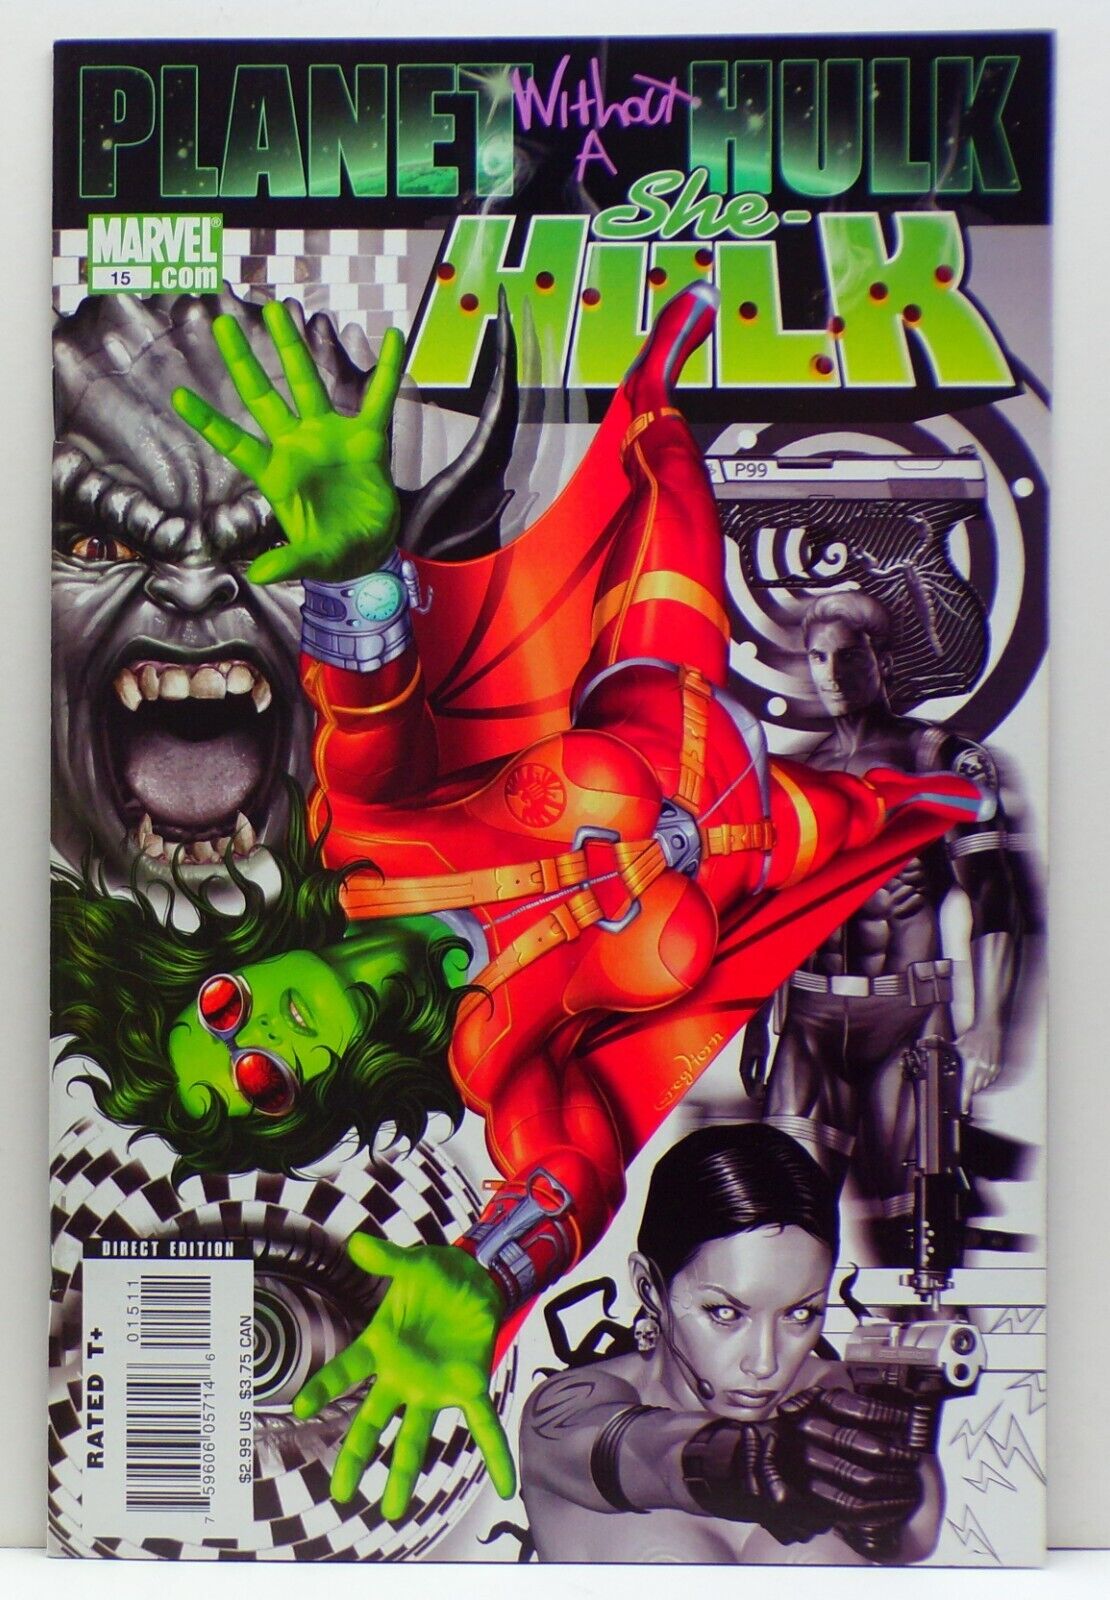 She-Hulk #15